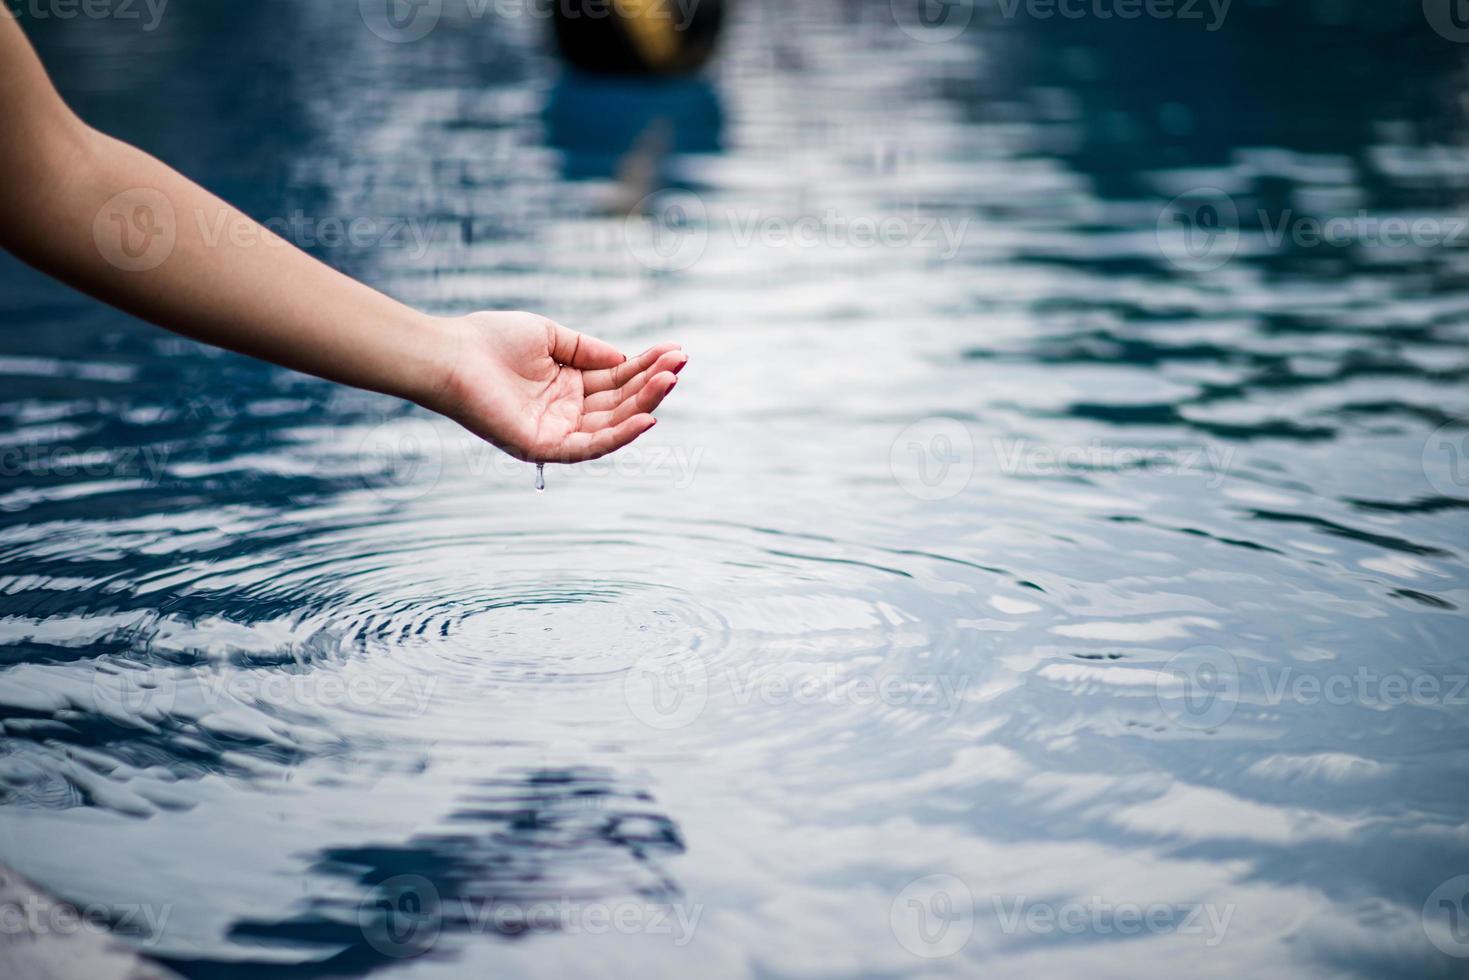 a mão que toca a água azul. a piscina é limpa e clara. com uma gota de água na água. foto